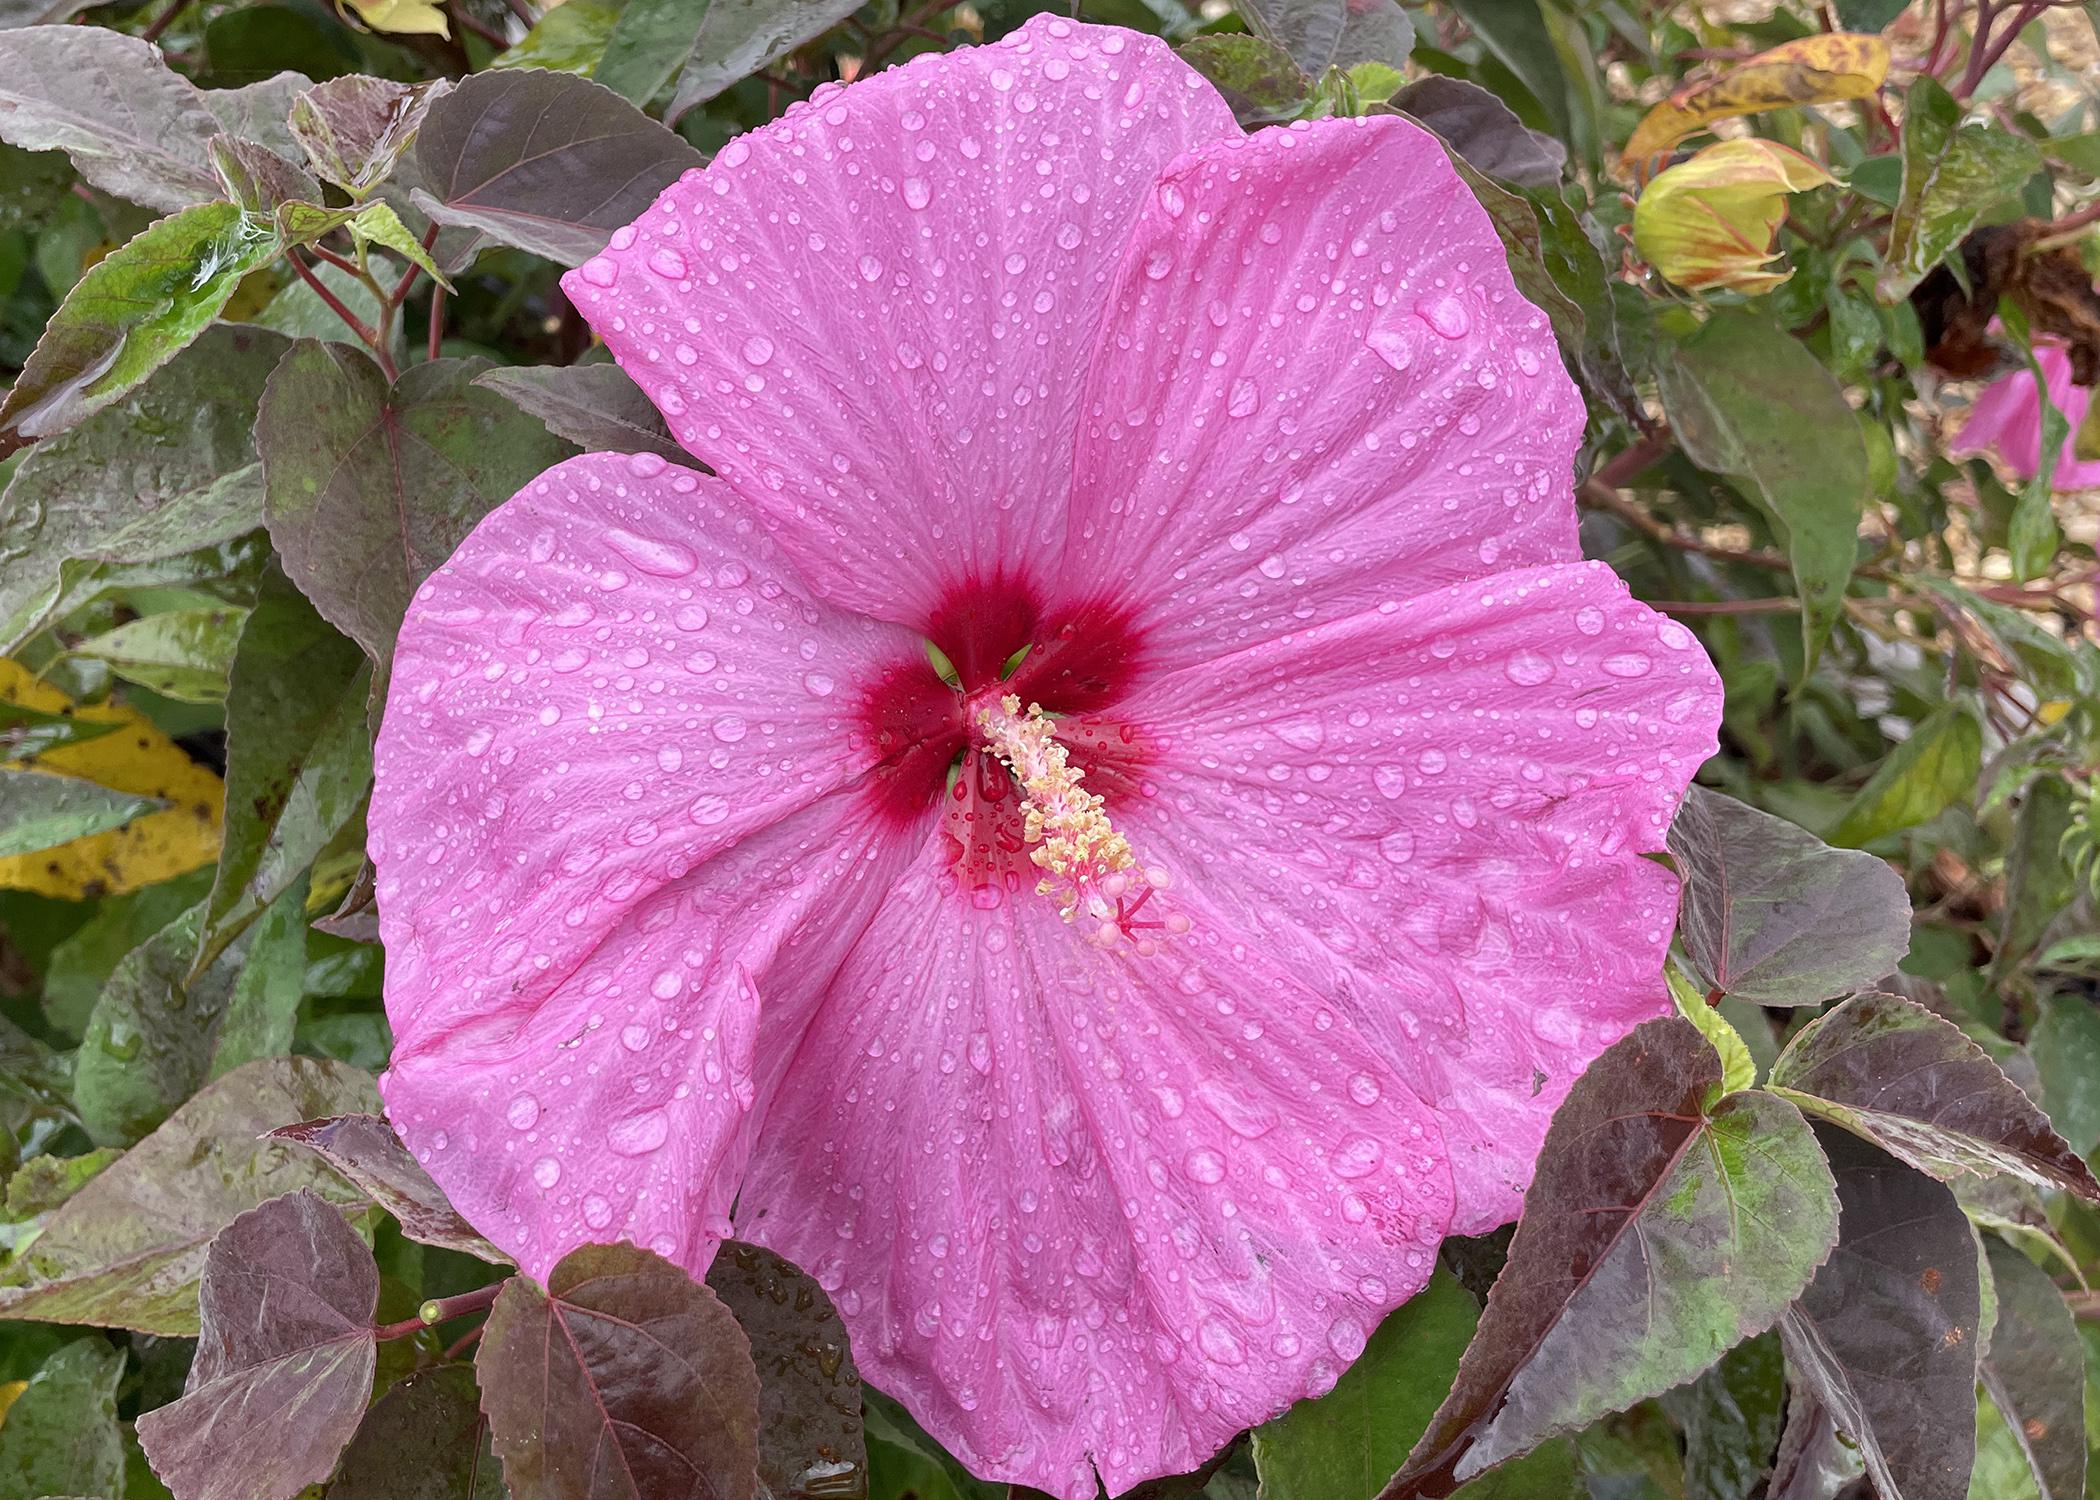 A huge, pink flower has a dark center.